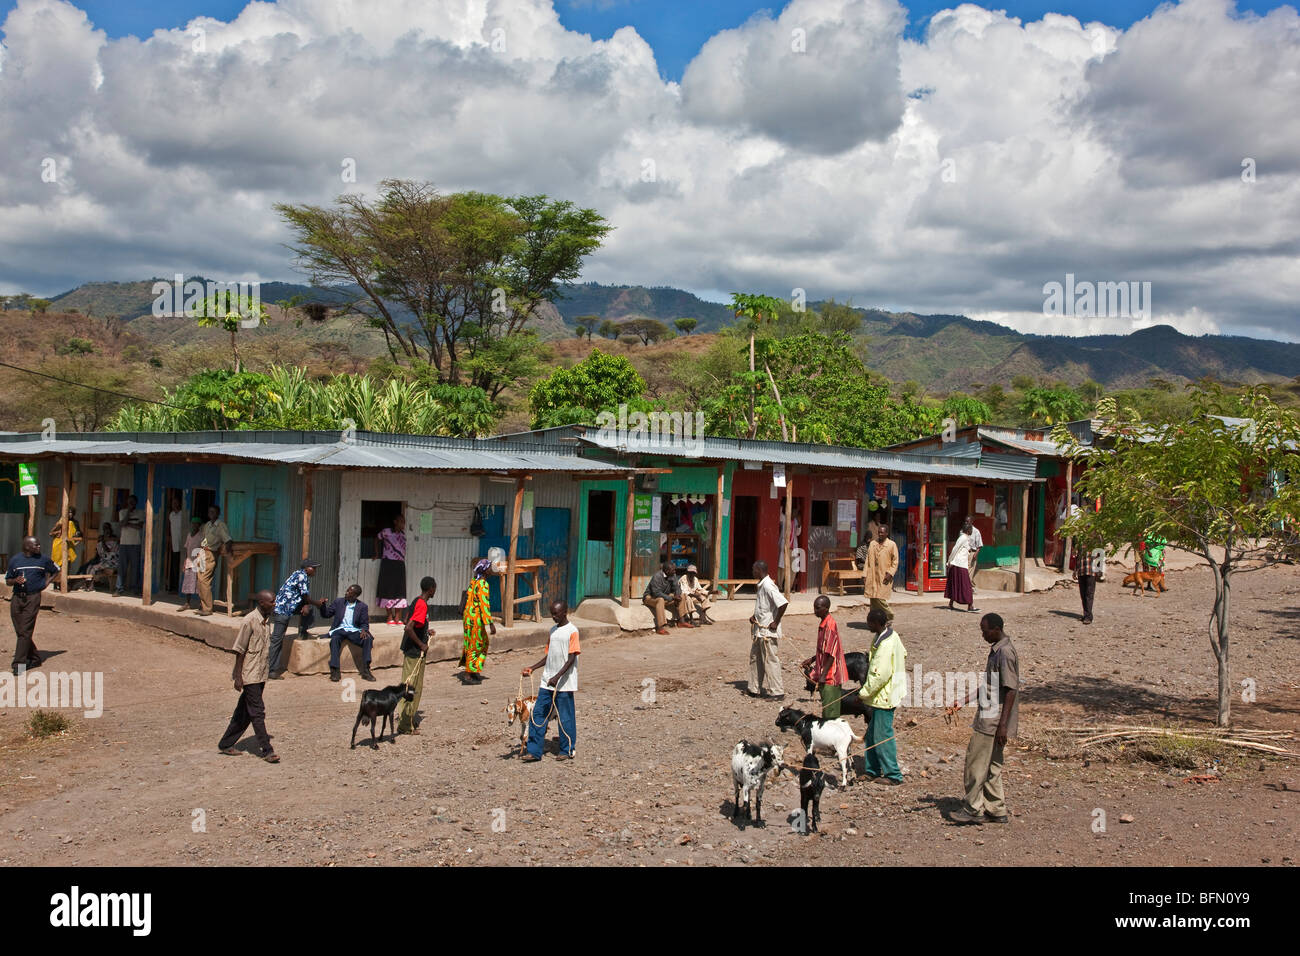 Kenia, Baringo District. Eine Ziege Markt das Handelszentrum von Koriema in einem semi-ariden Region Kenyas Provinz Rift Valley. Stockfoto